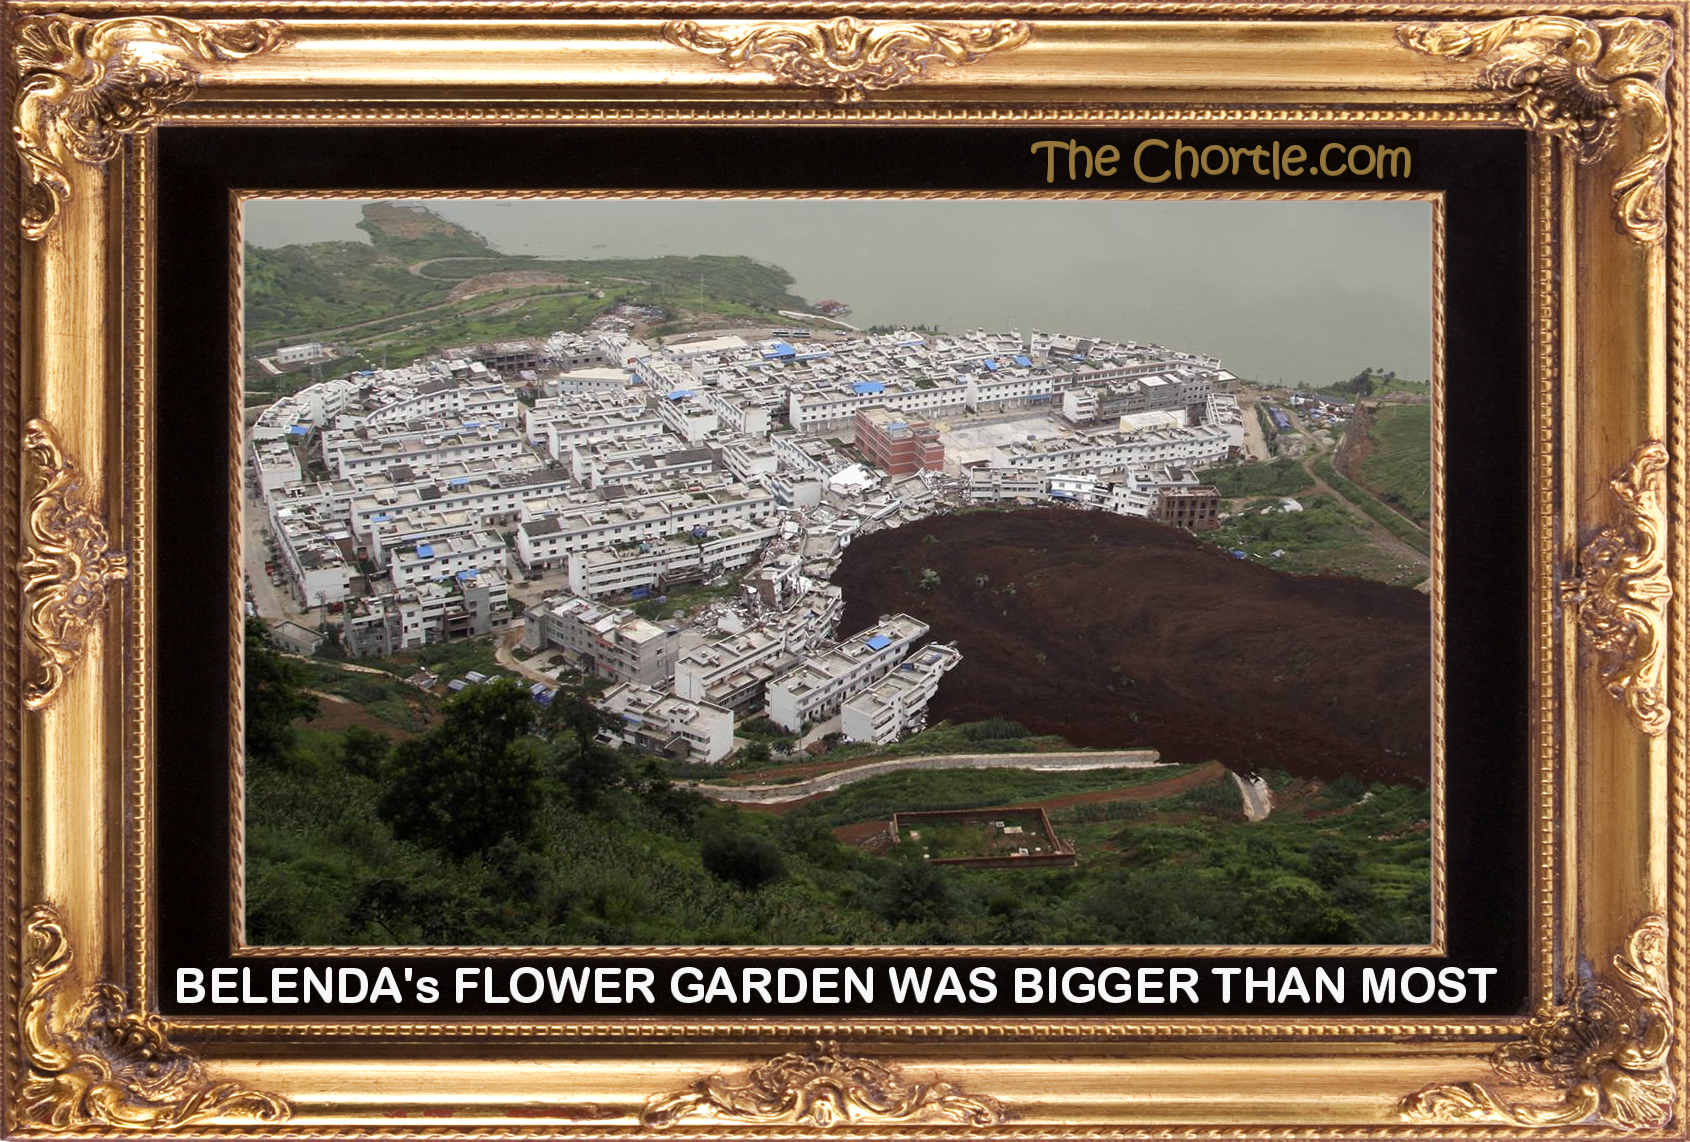 Belenda's flower garden was bigger than most.